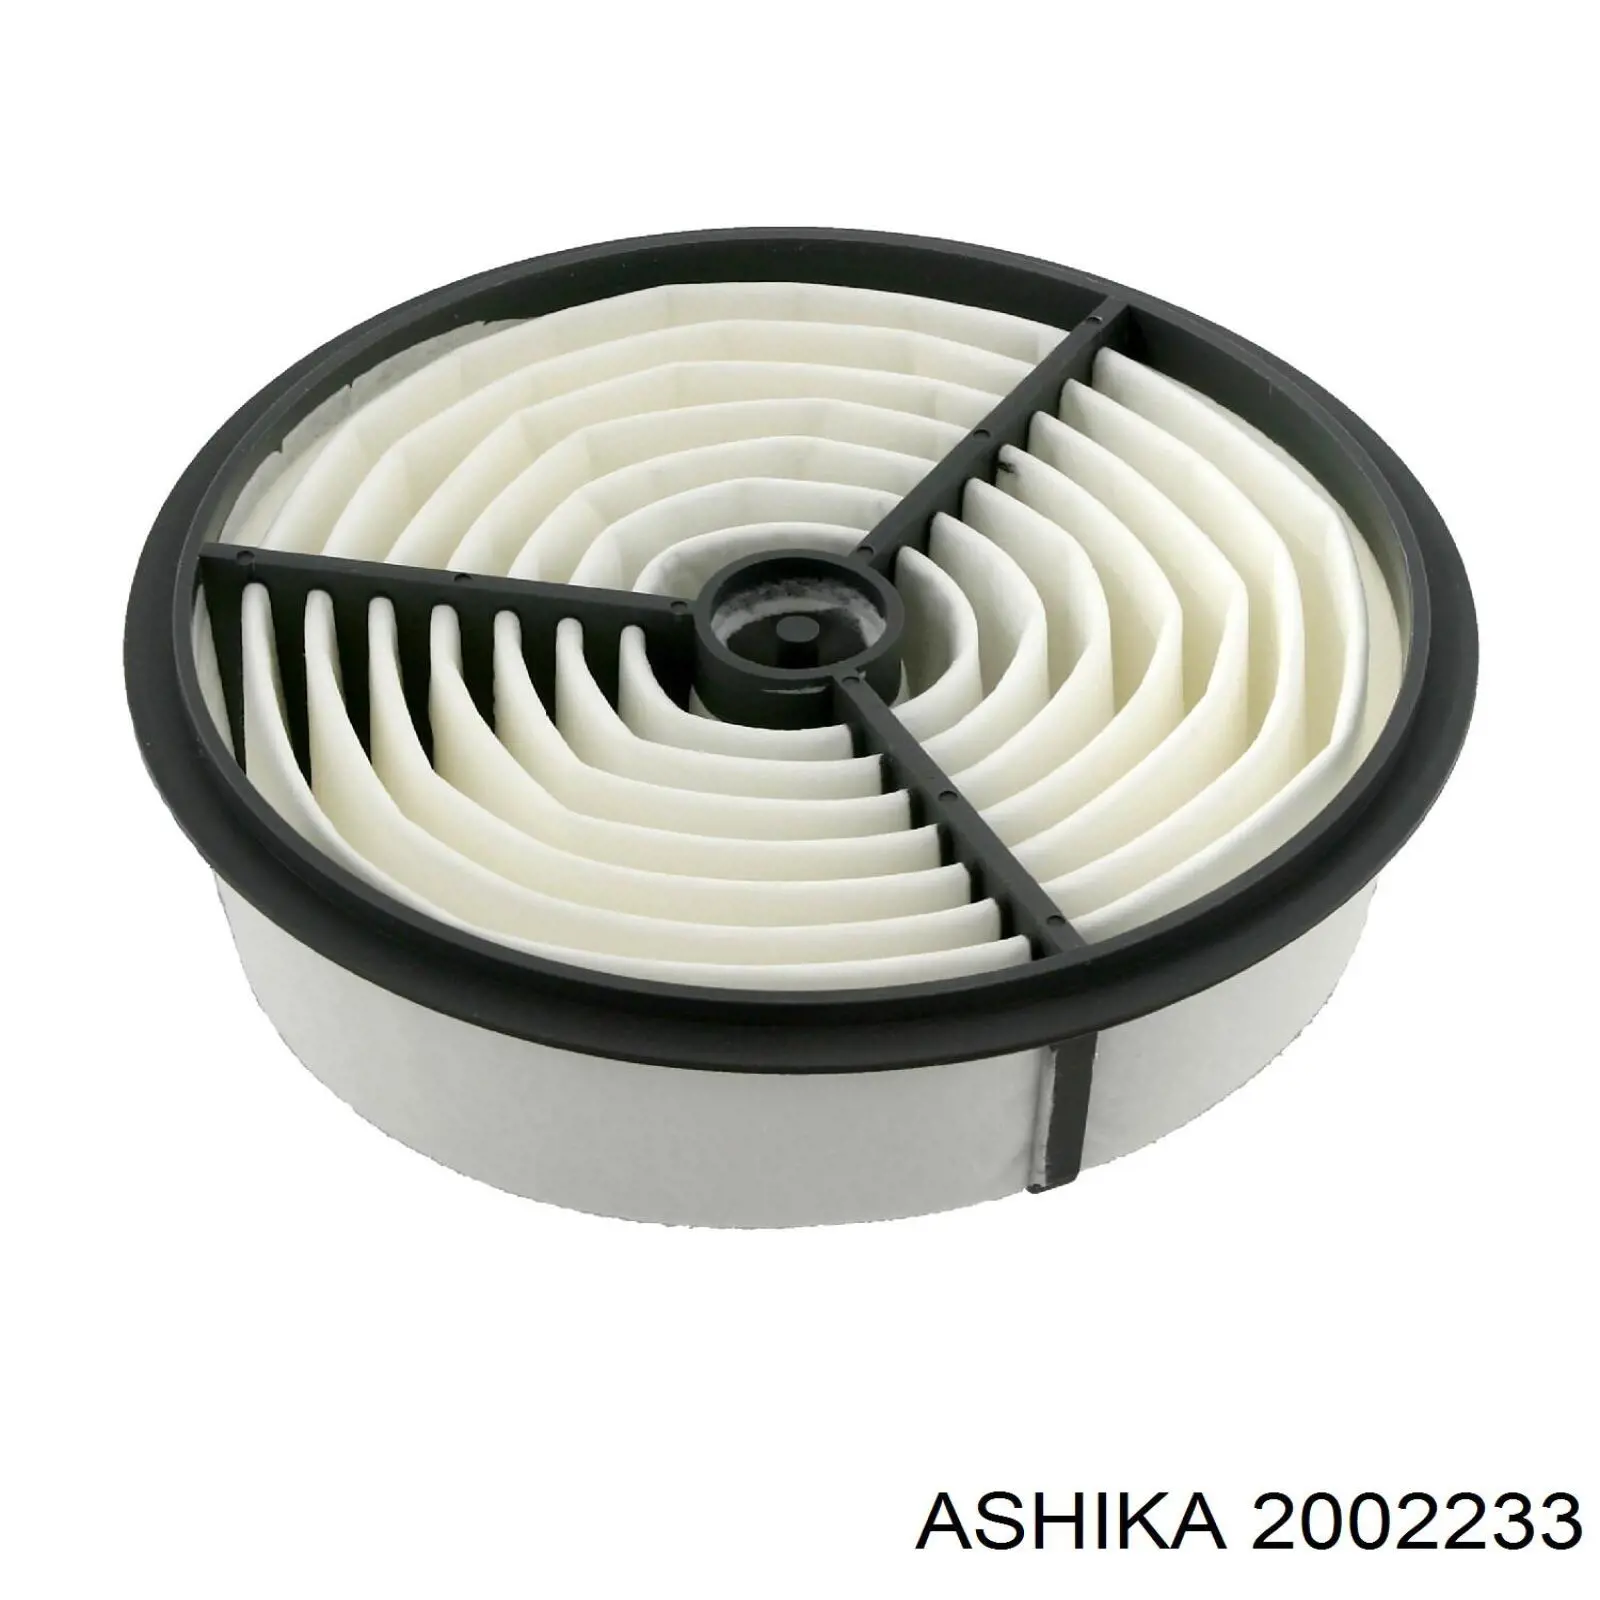 2002233 Ashika воздушный фильтр